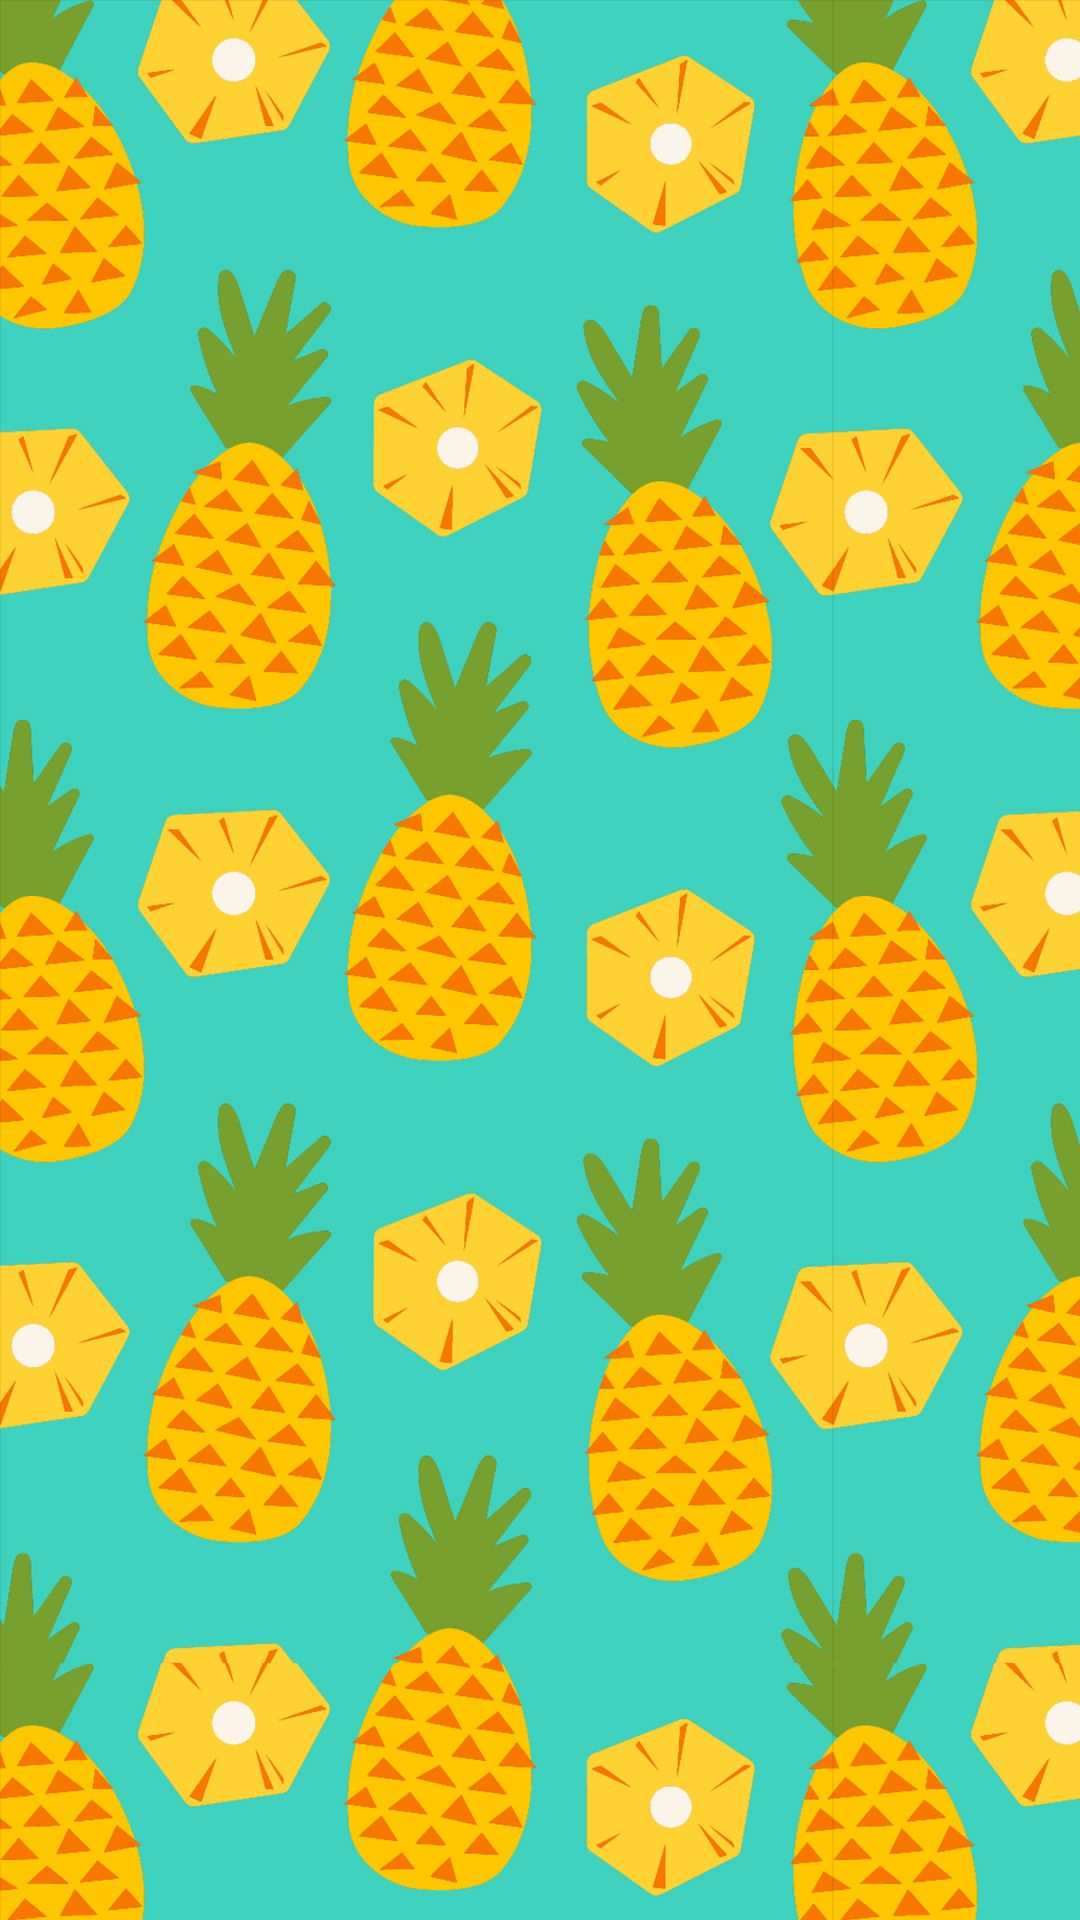 wallpaper feminino,pineapple,ananas,fruit,yellow,orange